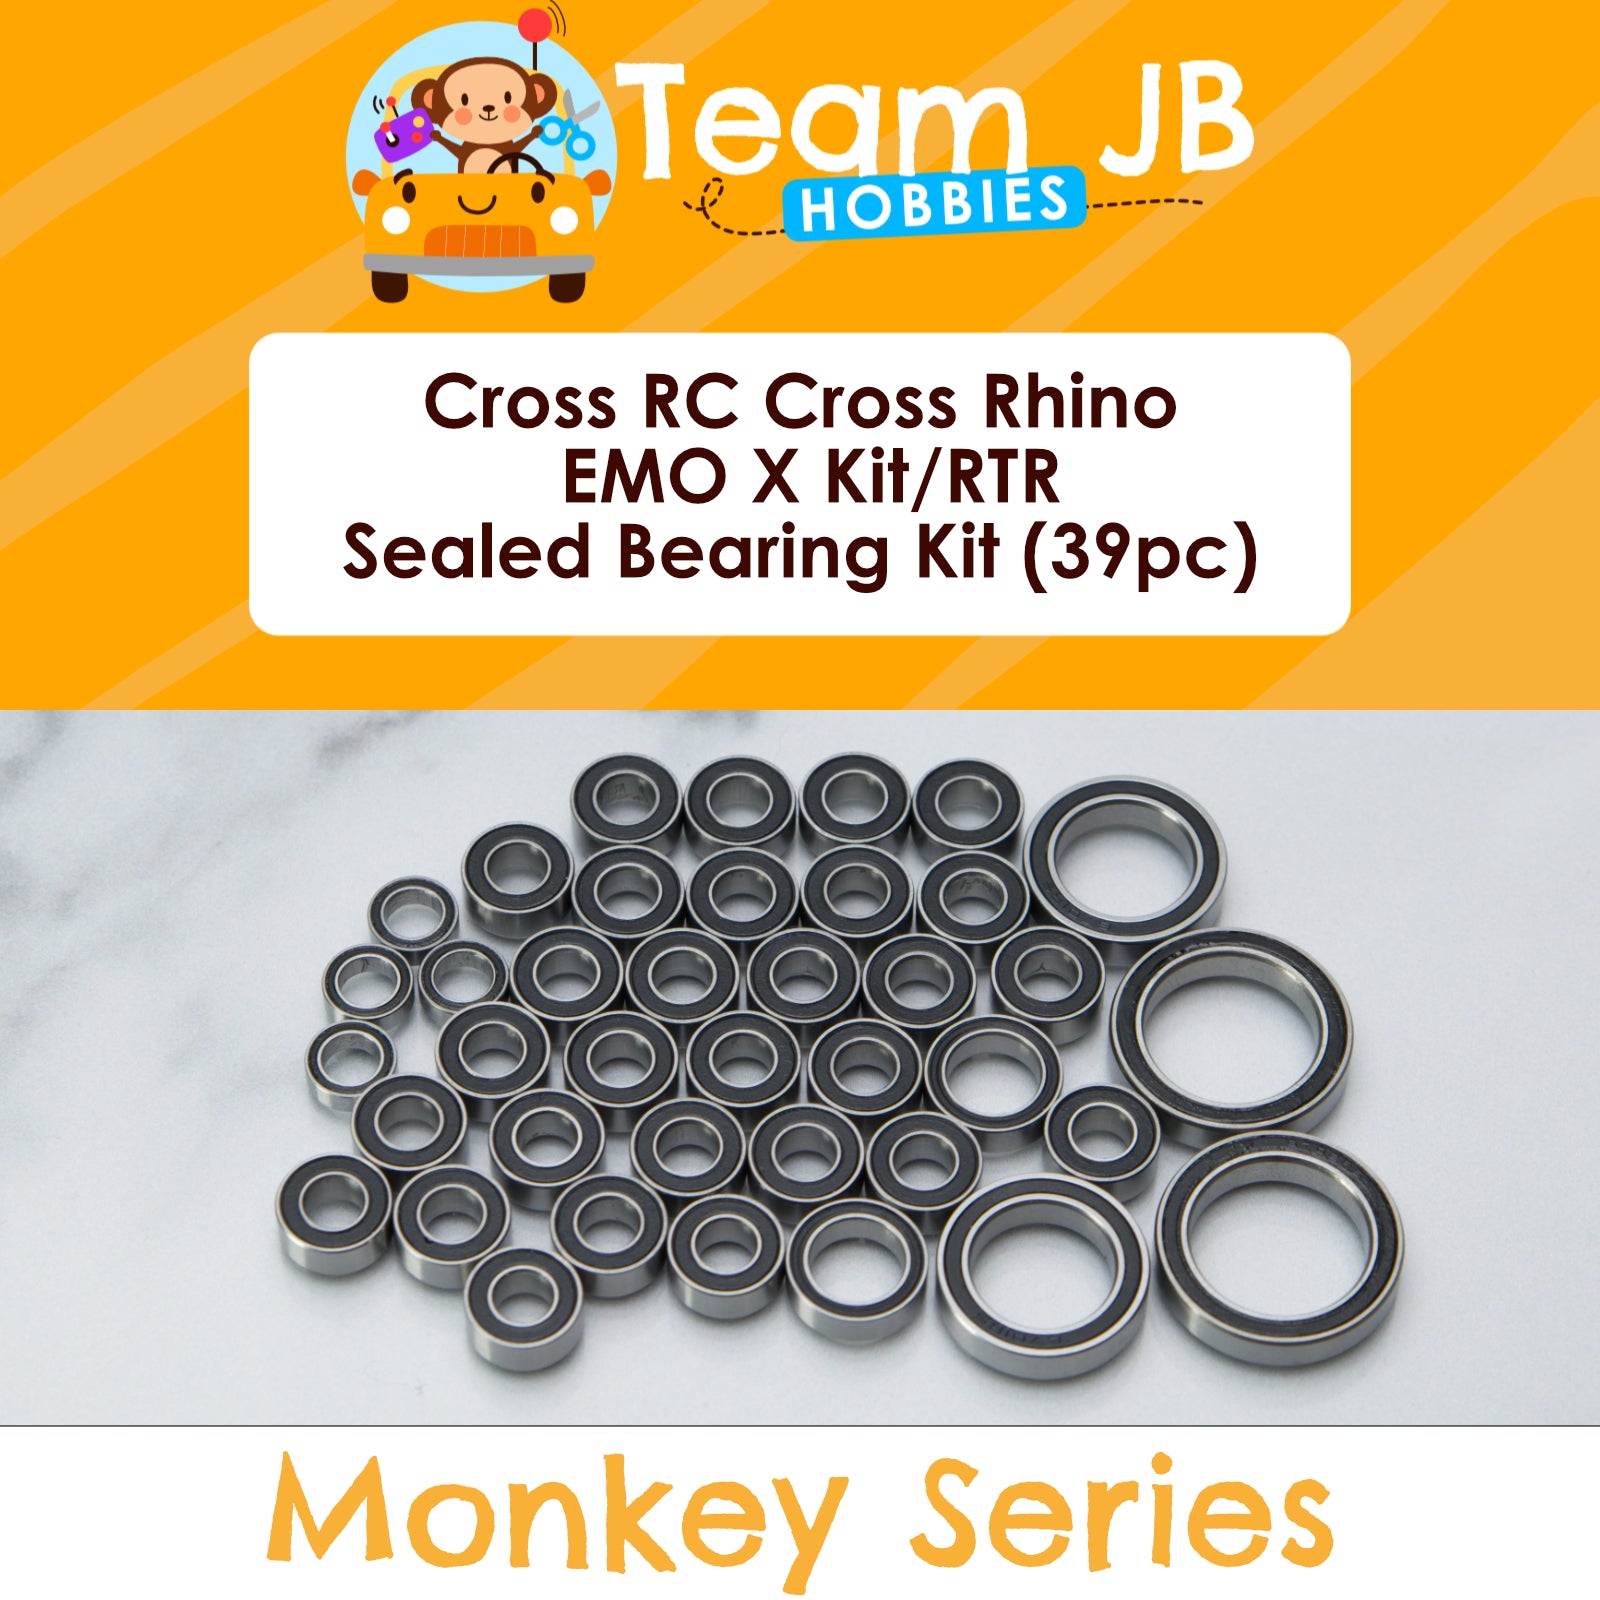 Cross RC Rhino EMO X Kit, Rhino EMO X RTR - Sealed Bearing Kit